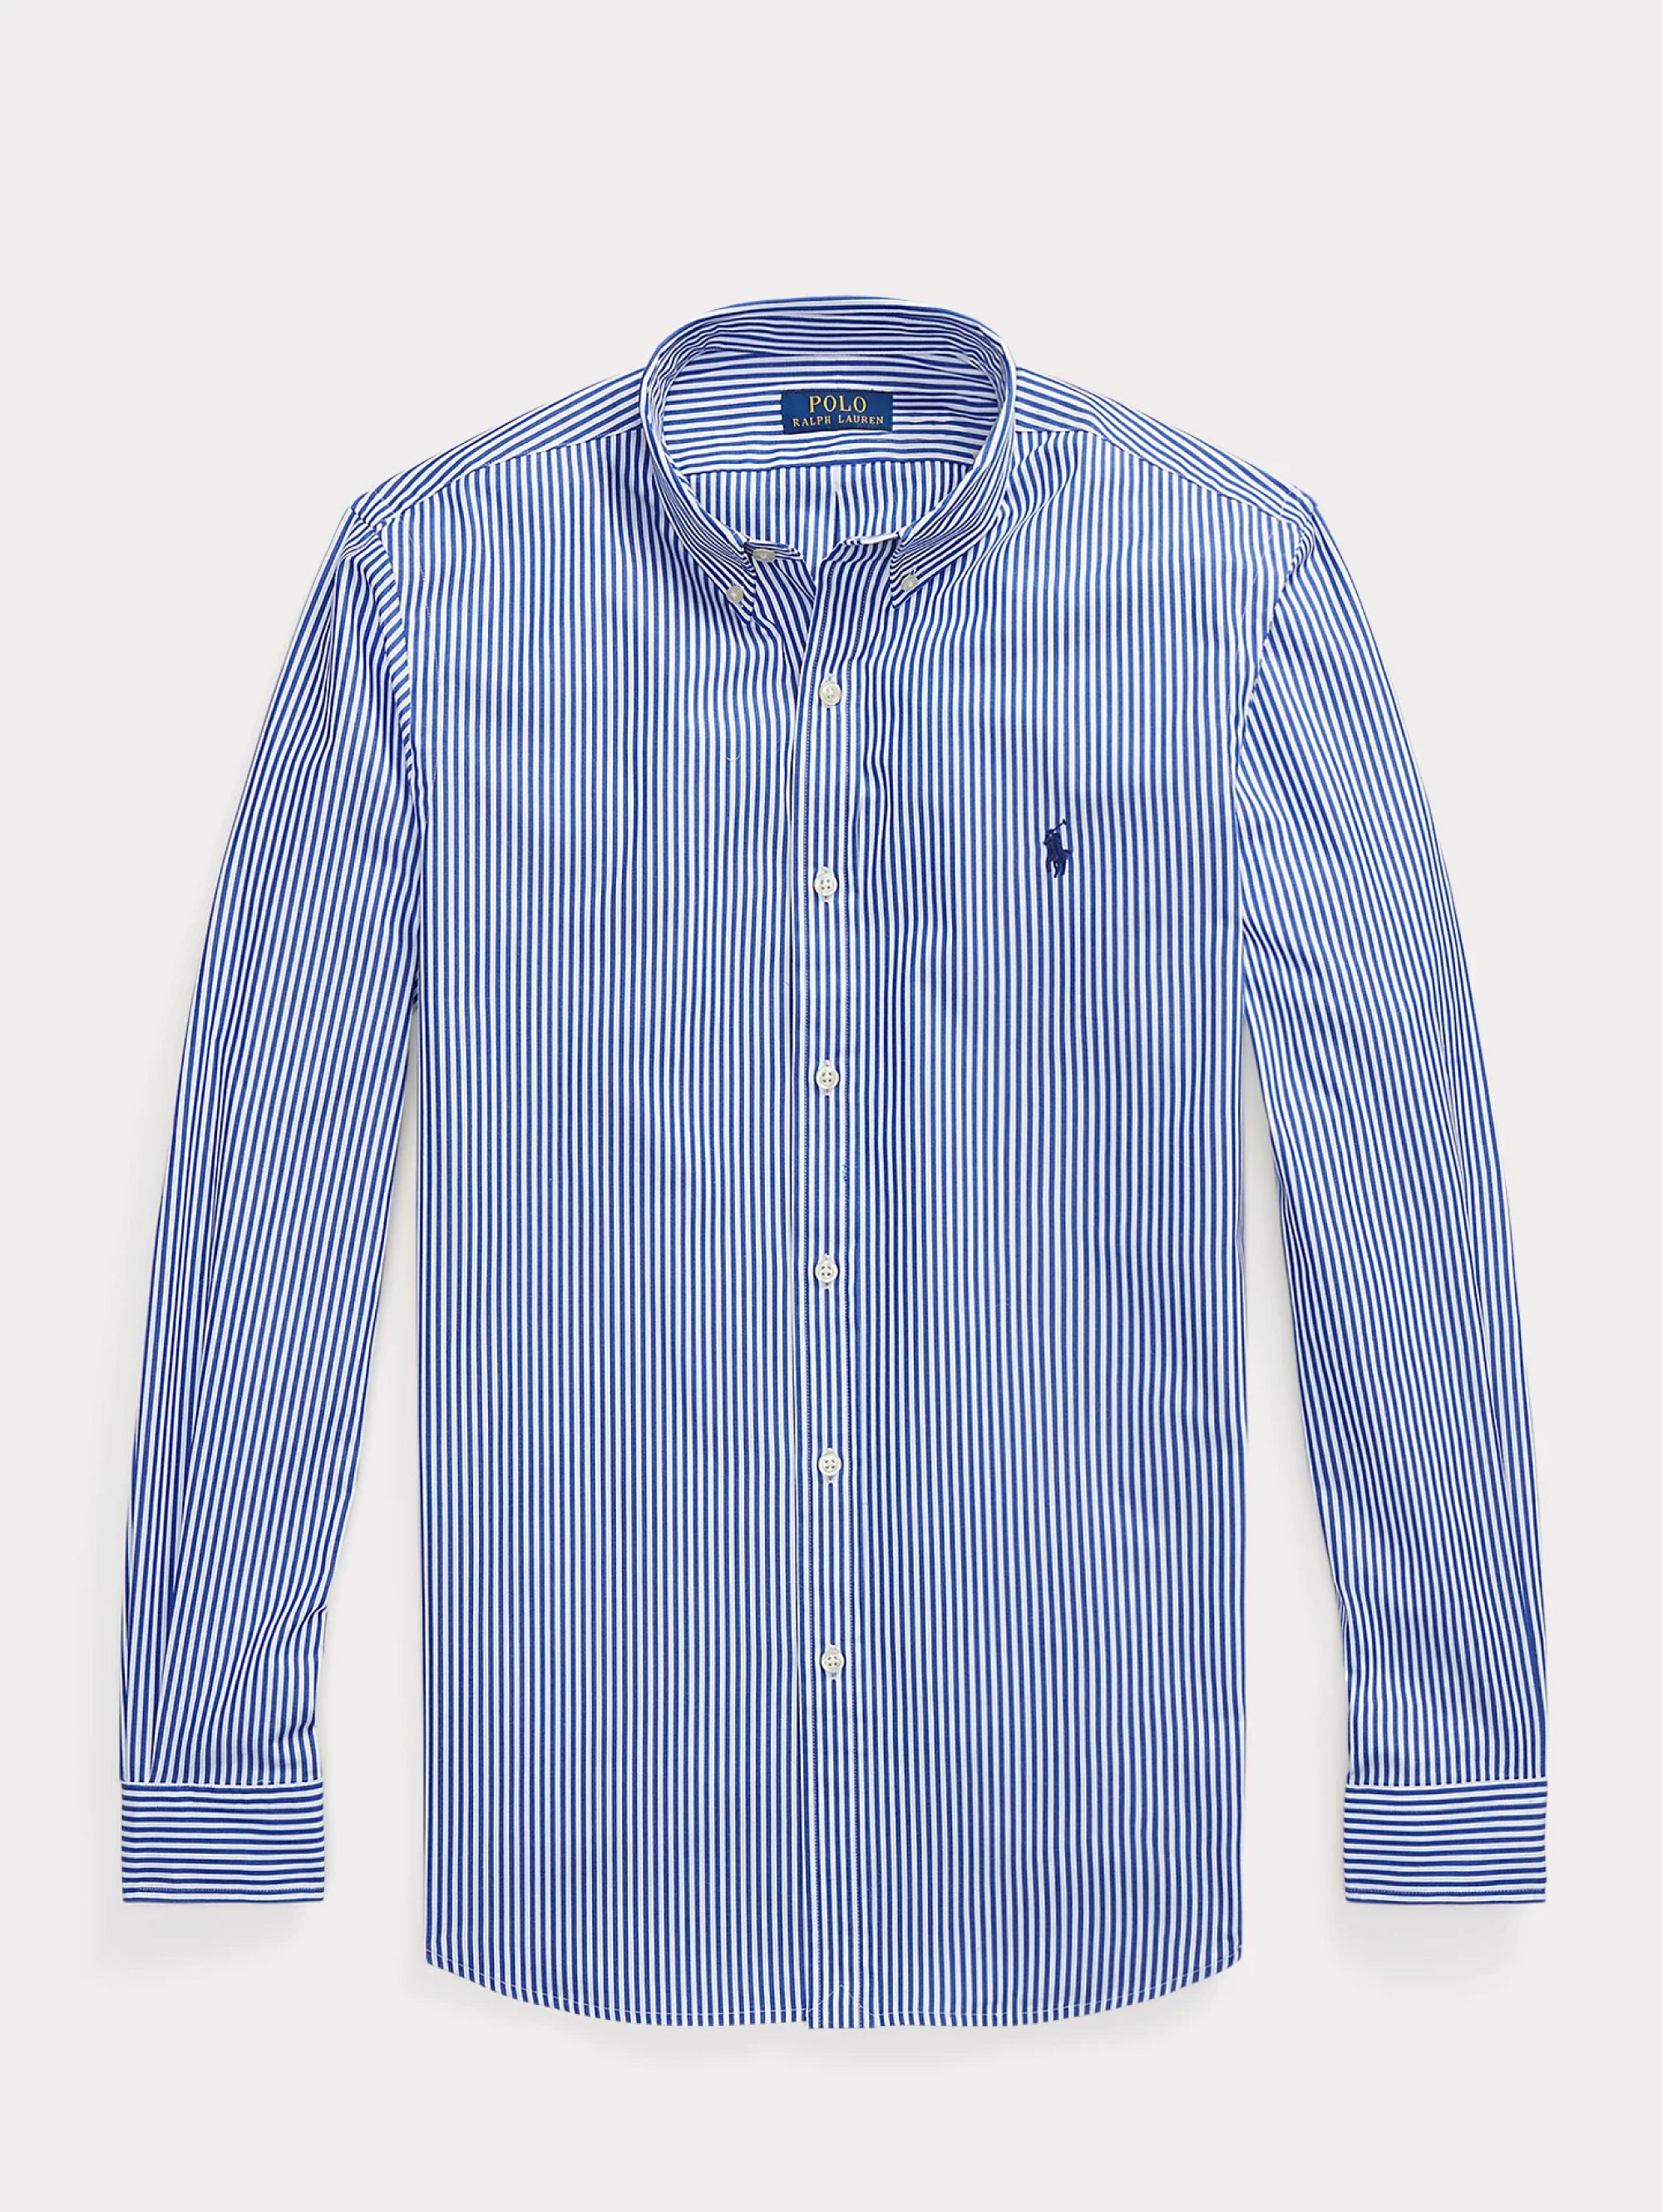 Blau/weiß gestreiftes Stretch-Popeline-Hemd